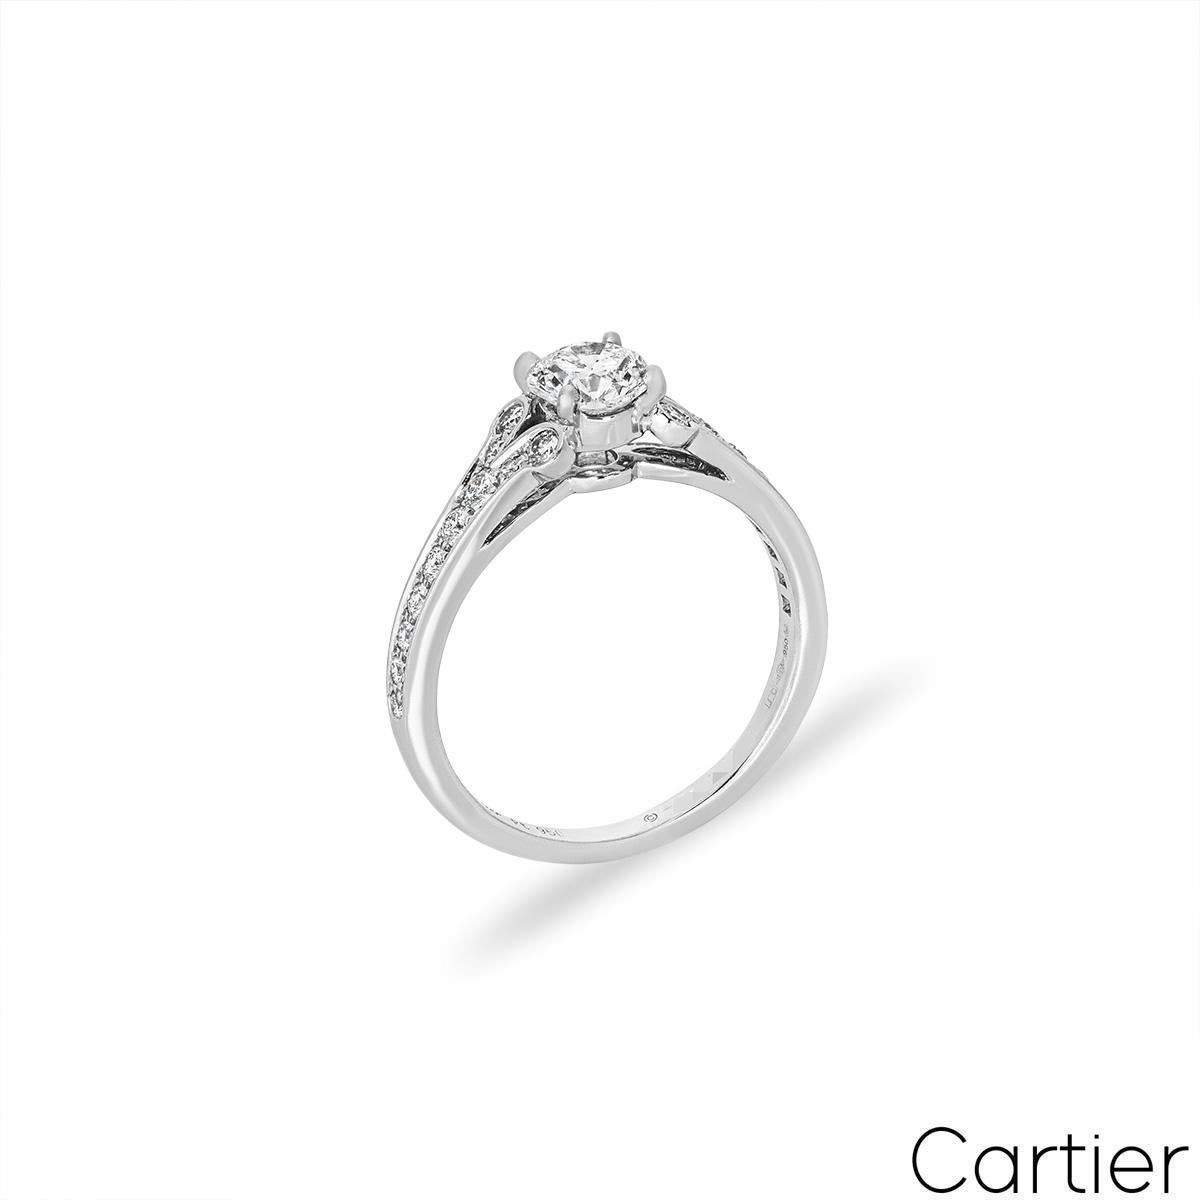 Ein anmutiger Platin-Diamantring von Cartier aus der Collection Ballerine Solitaire. Der Verlobungsring besteht aus einem runden Diamanten im Brillantschliff, der in der Mitte in einer vierzackigen Fassung sitzt und 0,71 ct. wiegt, Farbe G und